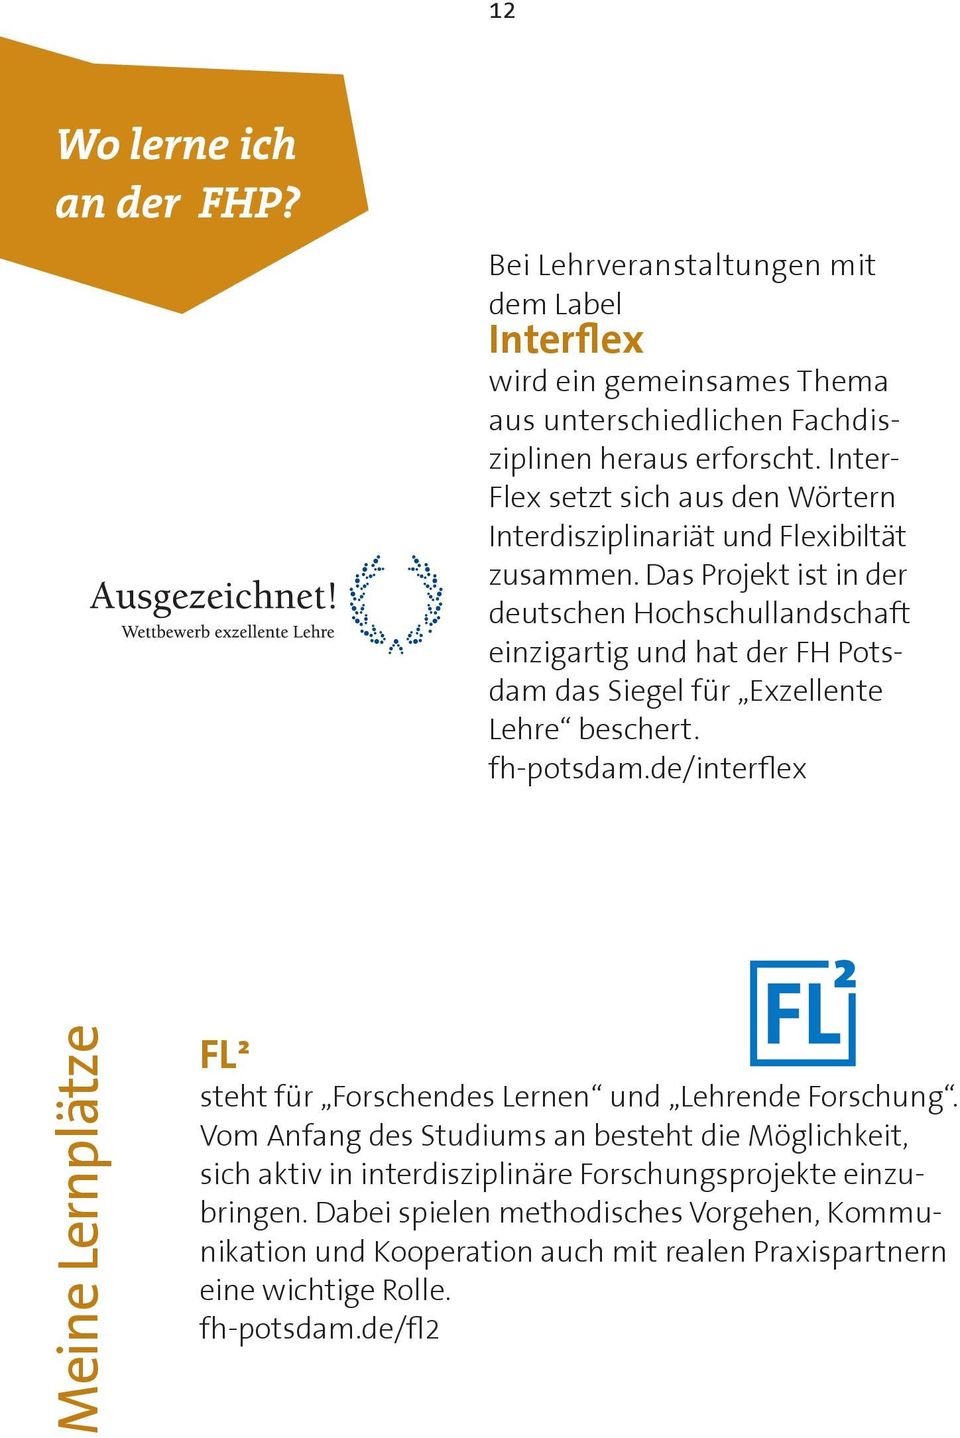 Das Projekt ist in der deutschen Hochschullandschaft einzigartig und hat der FH Potsdam das Siegel für Exzellente Lehre beschert. fh-potsdam.